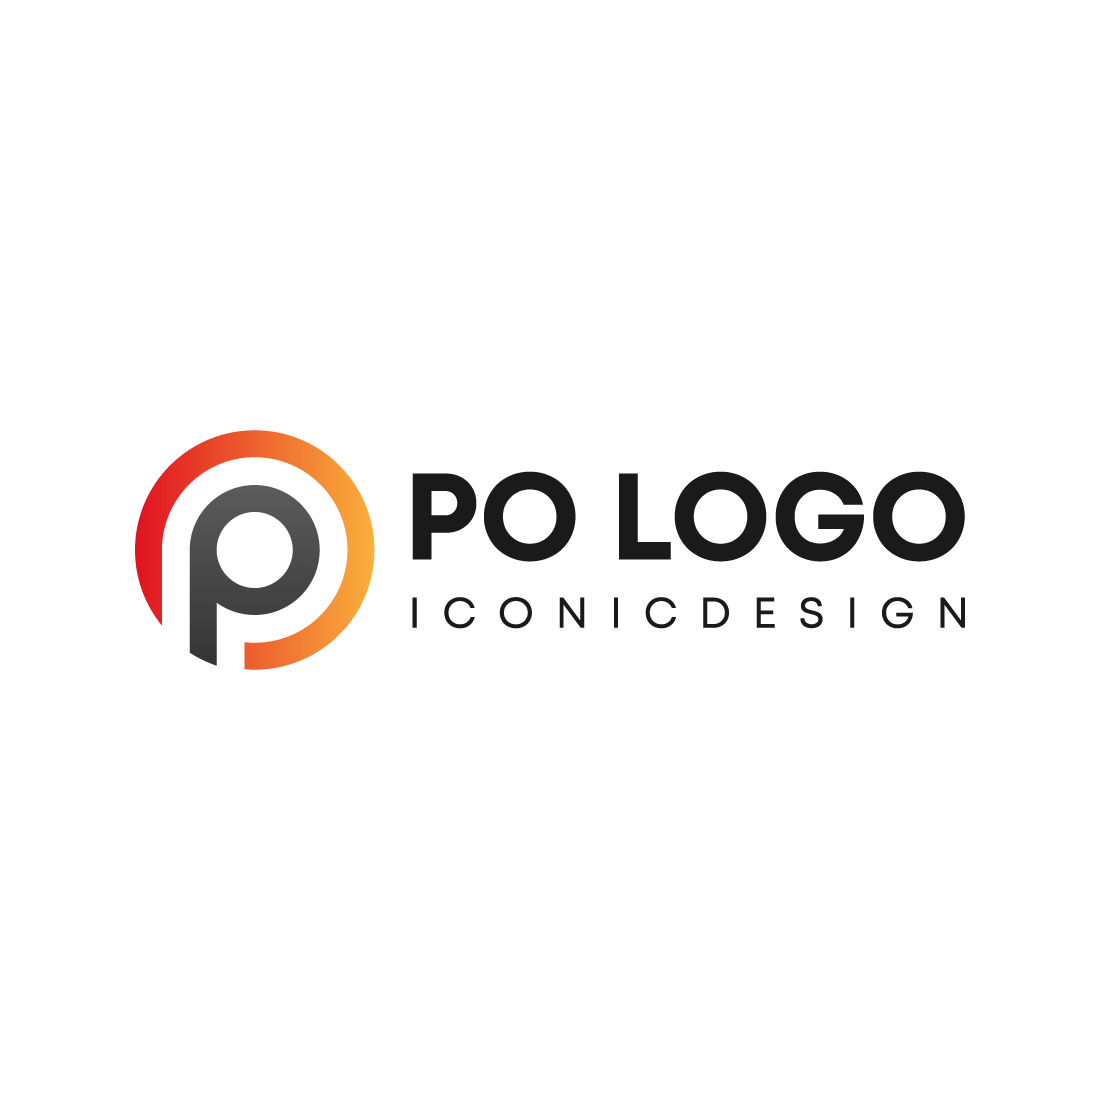 PO logo preview image.